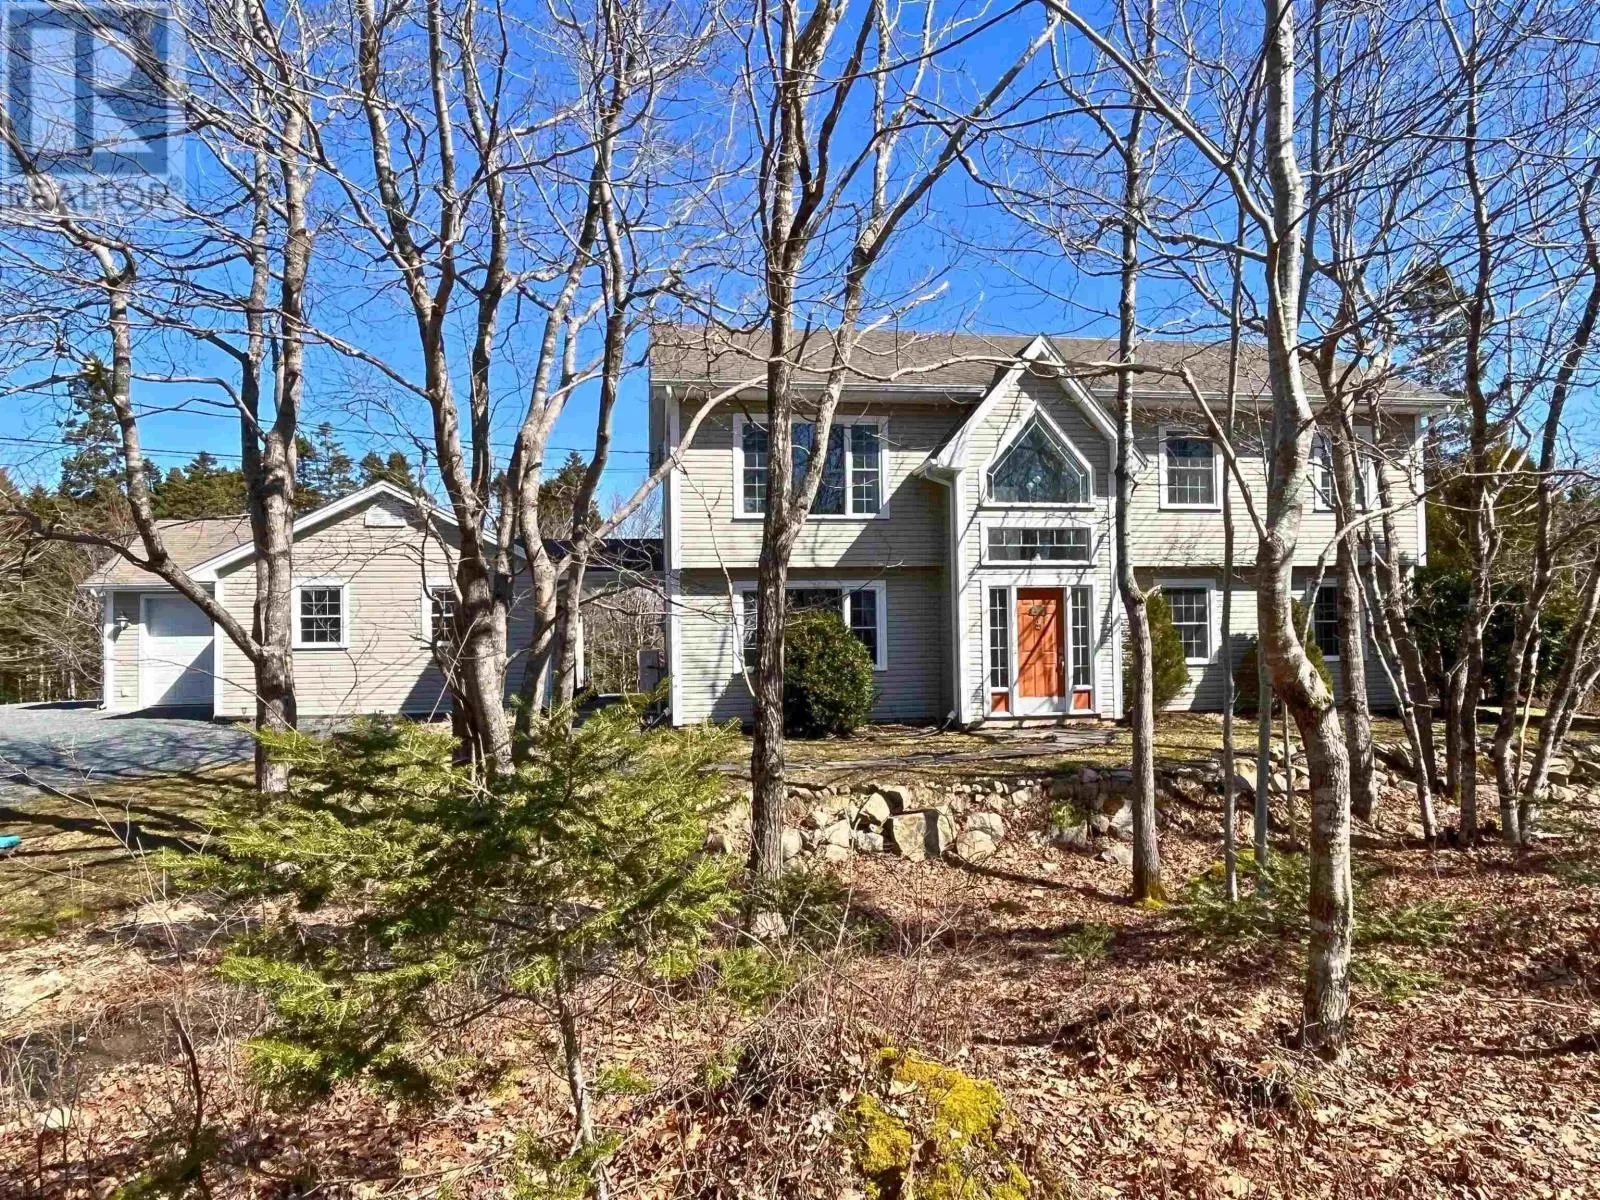 House for rent: 398 Abbey Road, Stillwater Lake, Nova Scotia B3Z 1P3